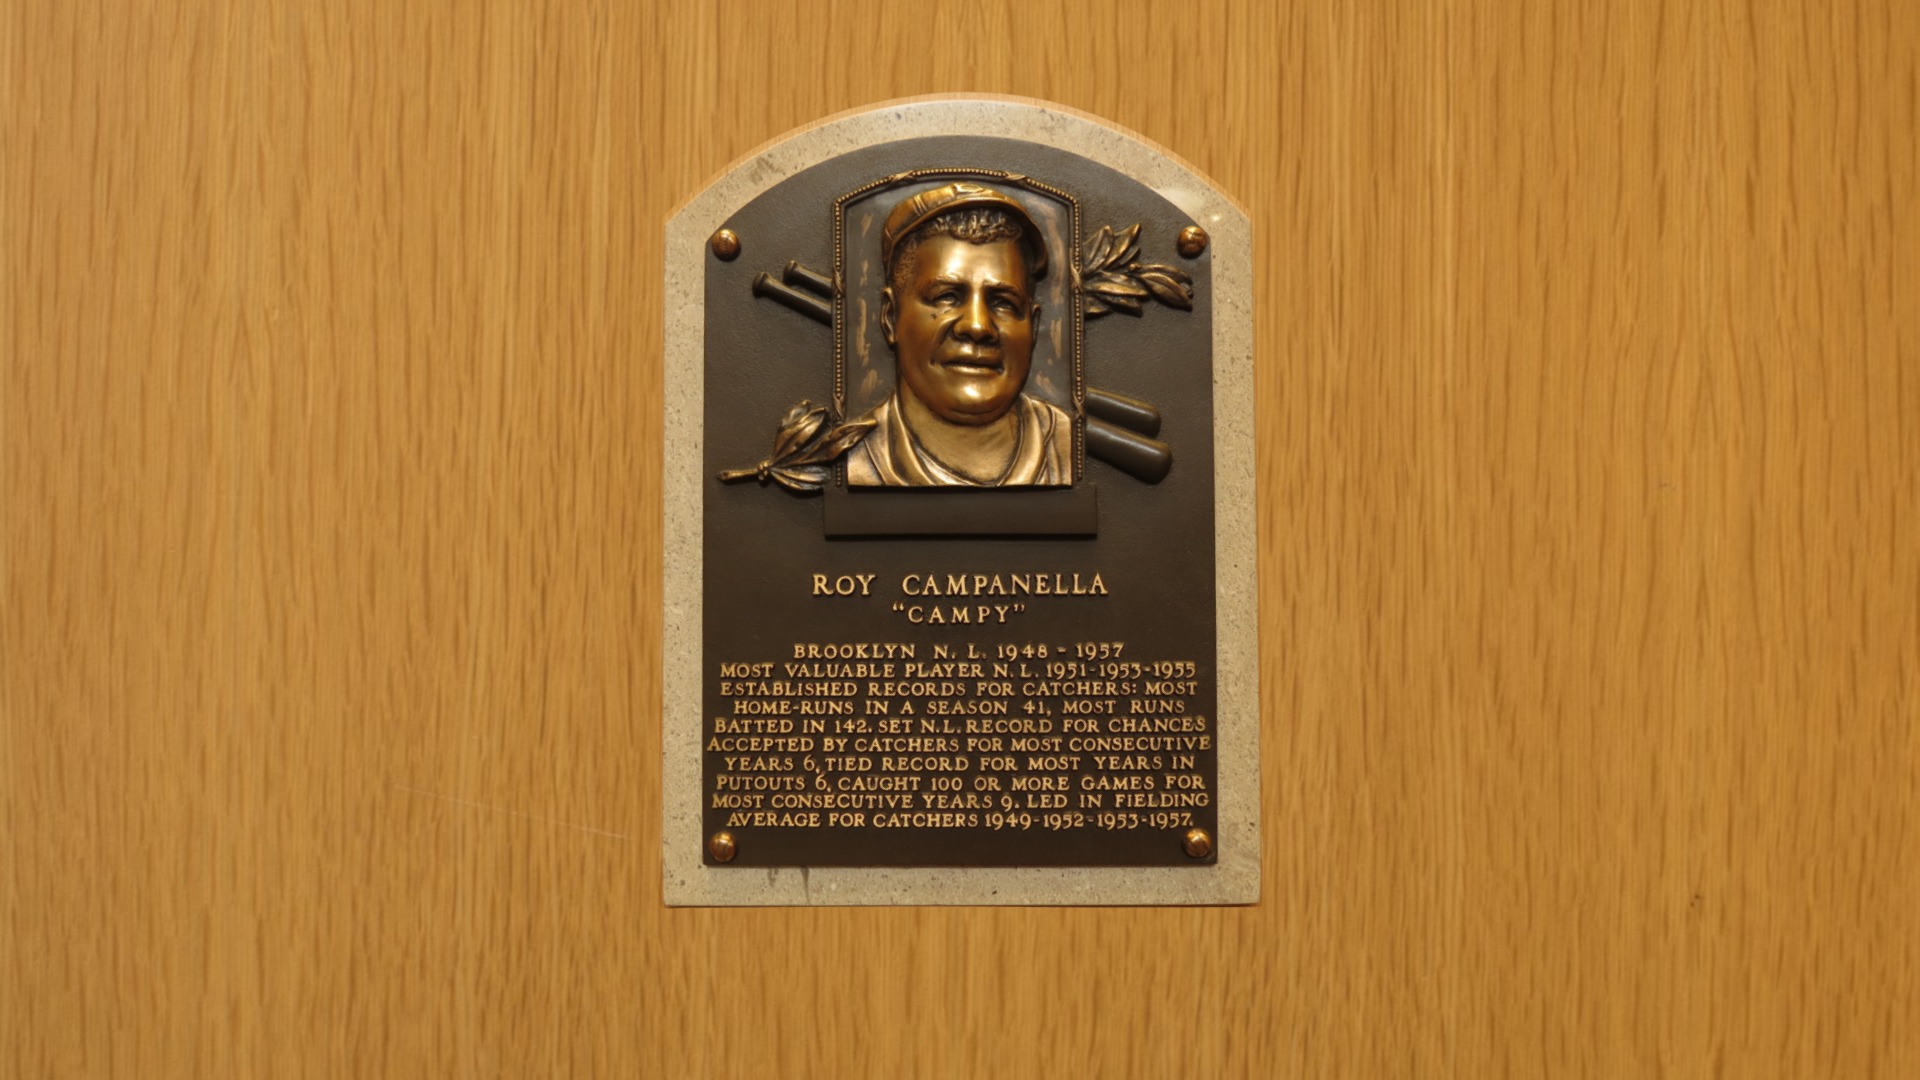 Roy Campanella